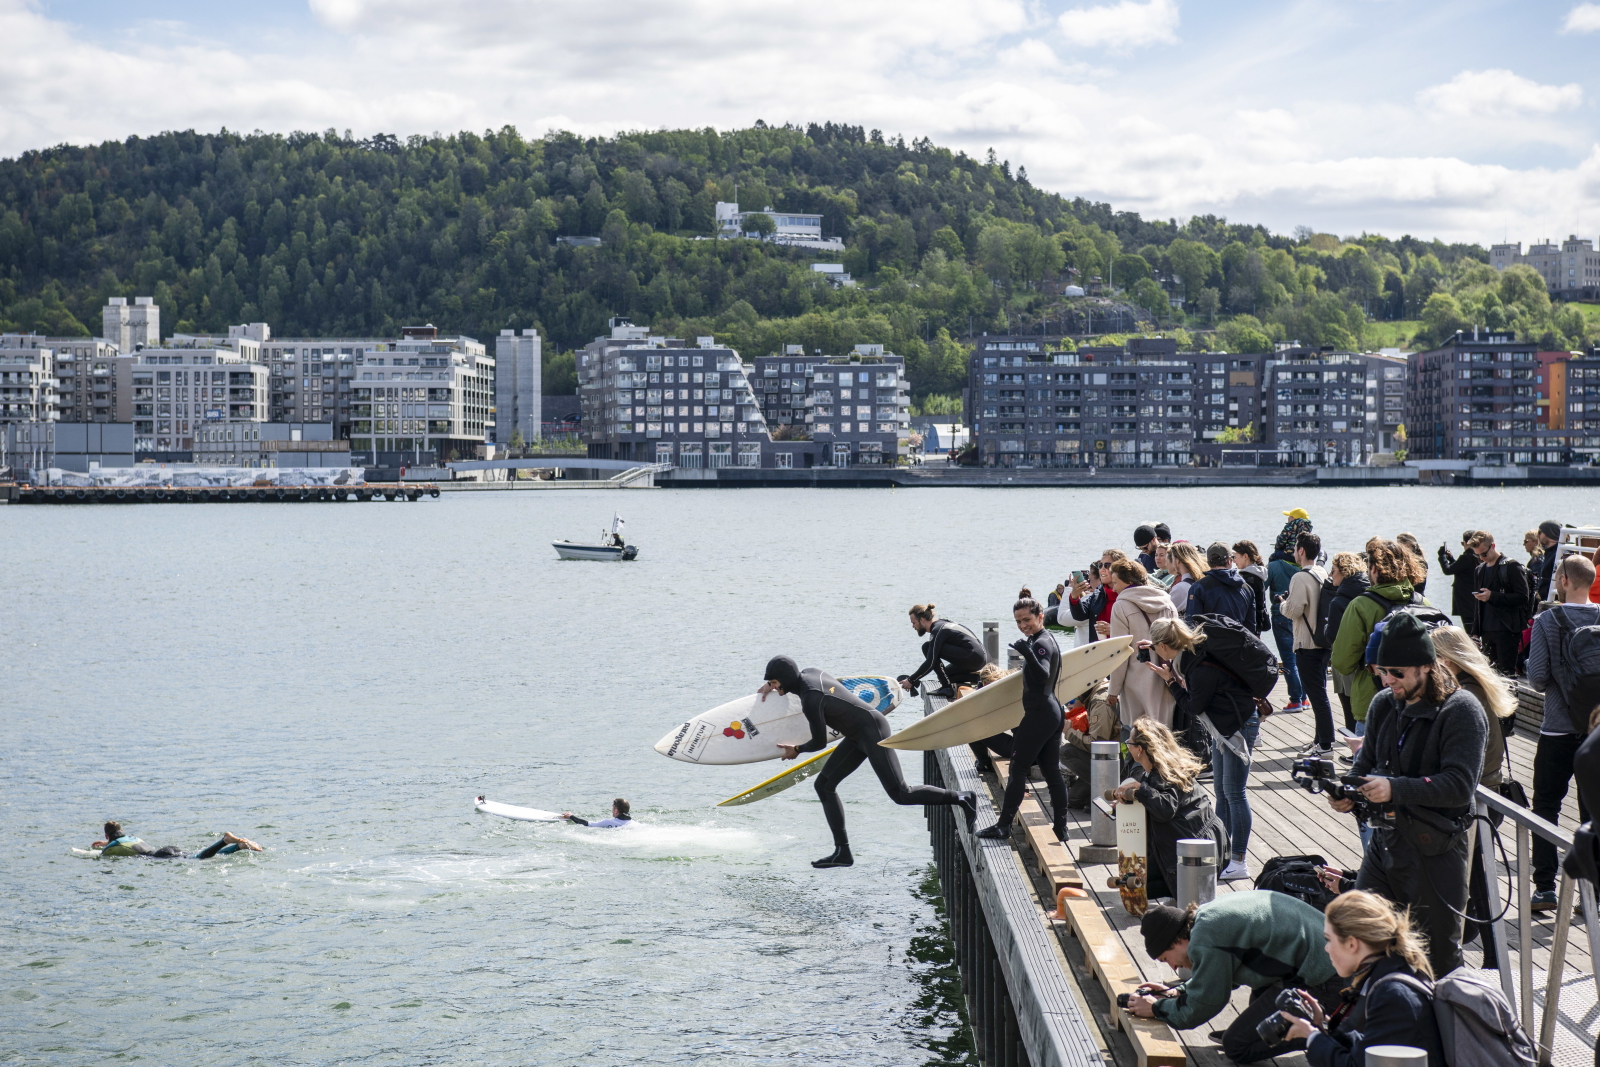 Publiczny pokaz surfingu odbył się dzisiaj przed operą w Oslo, EPA/OLA VATN